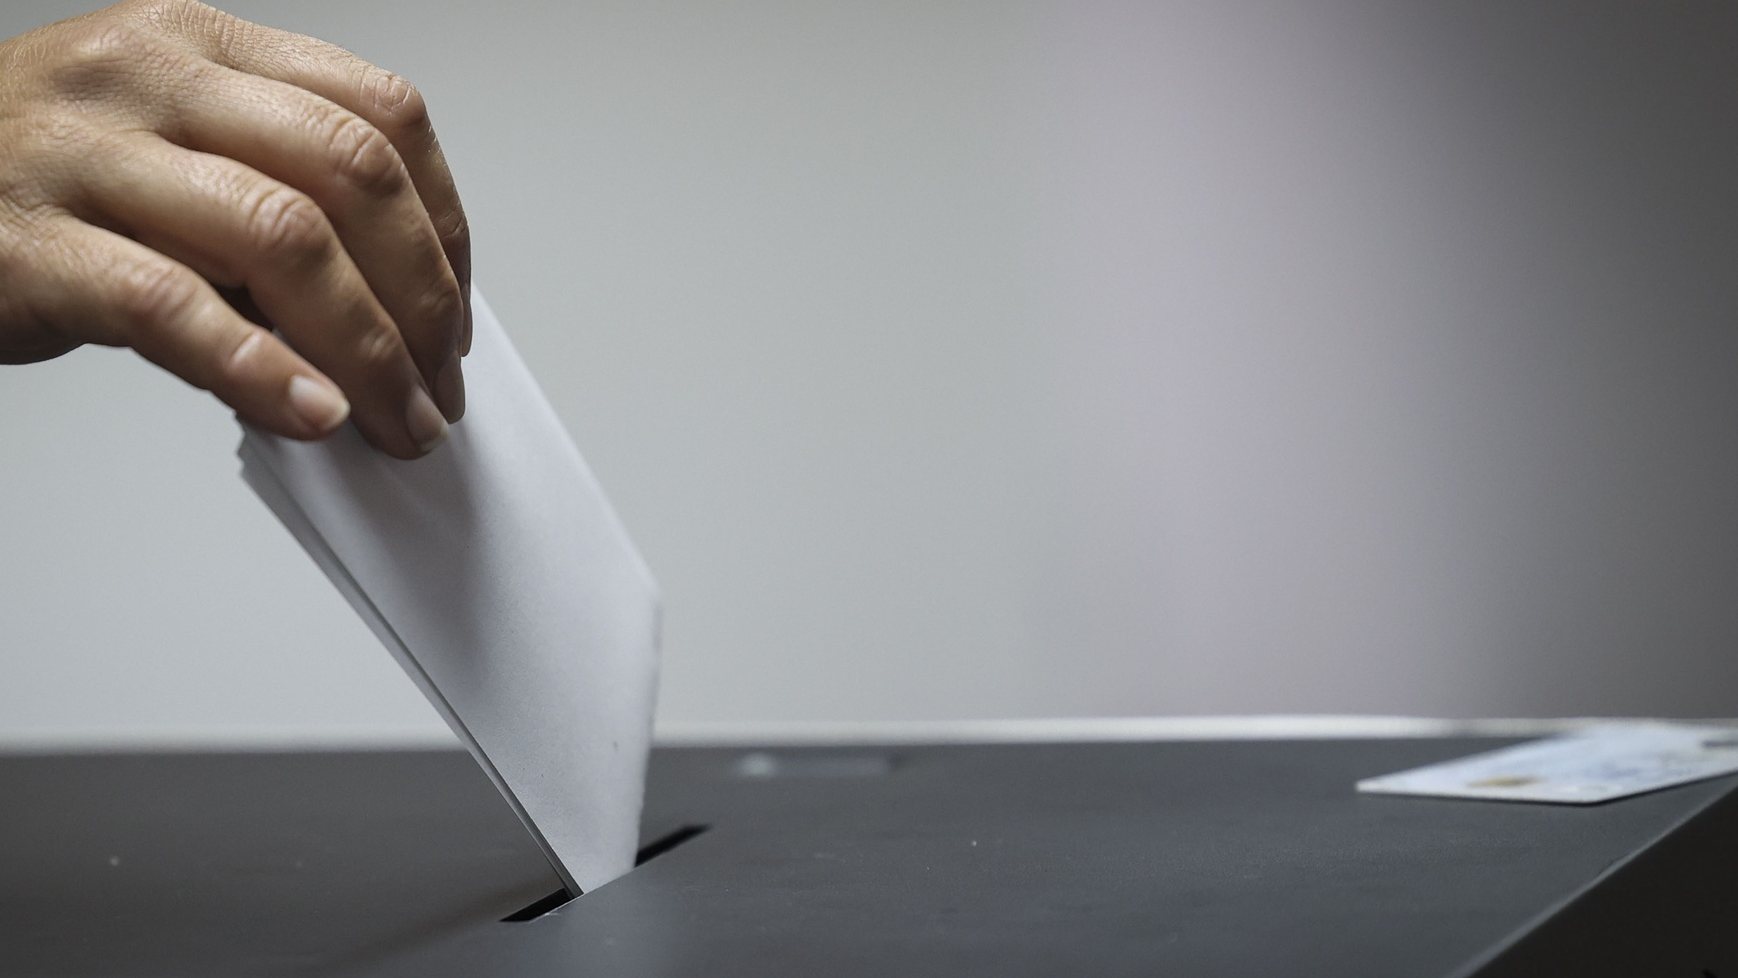 Açorianos exercem o seu direito de voto para as eleições regionais dos Açores em Ponta Delgada, 04 de fevereiro de 2024.Onze forças políticas, incluindo três coligações, disputam hoje os 57 lugares do parlamento açoriano nas legislativas regionais, que decorrem cerca de oito meses antes do previsto. ANDRÉ KOSTERS/LUSA